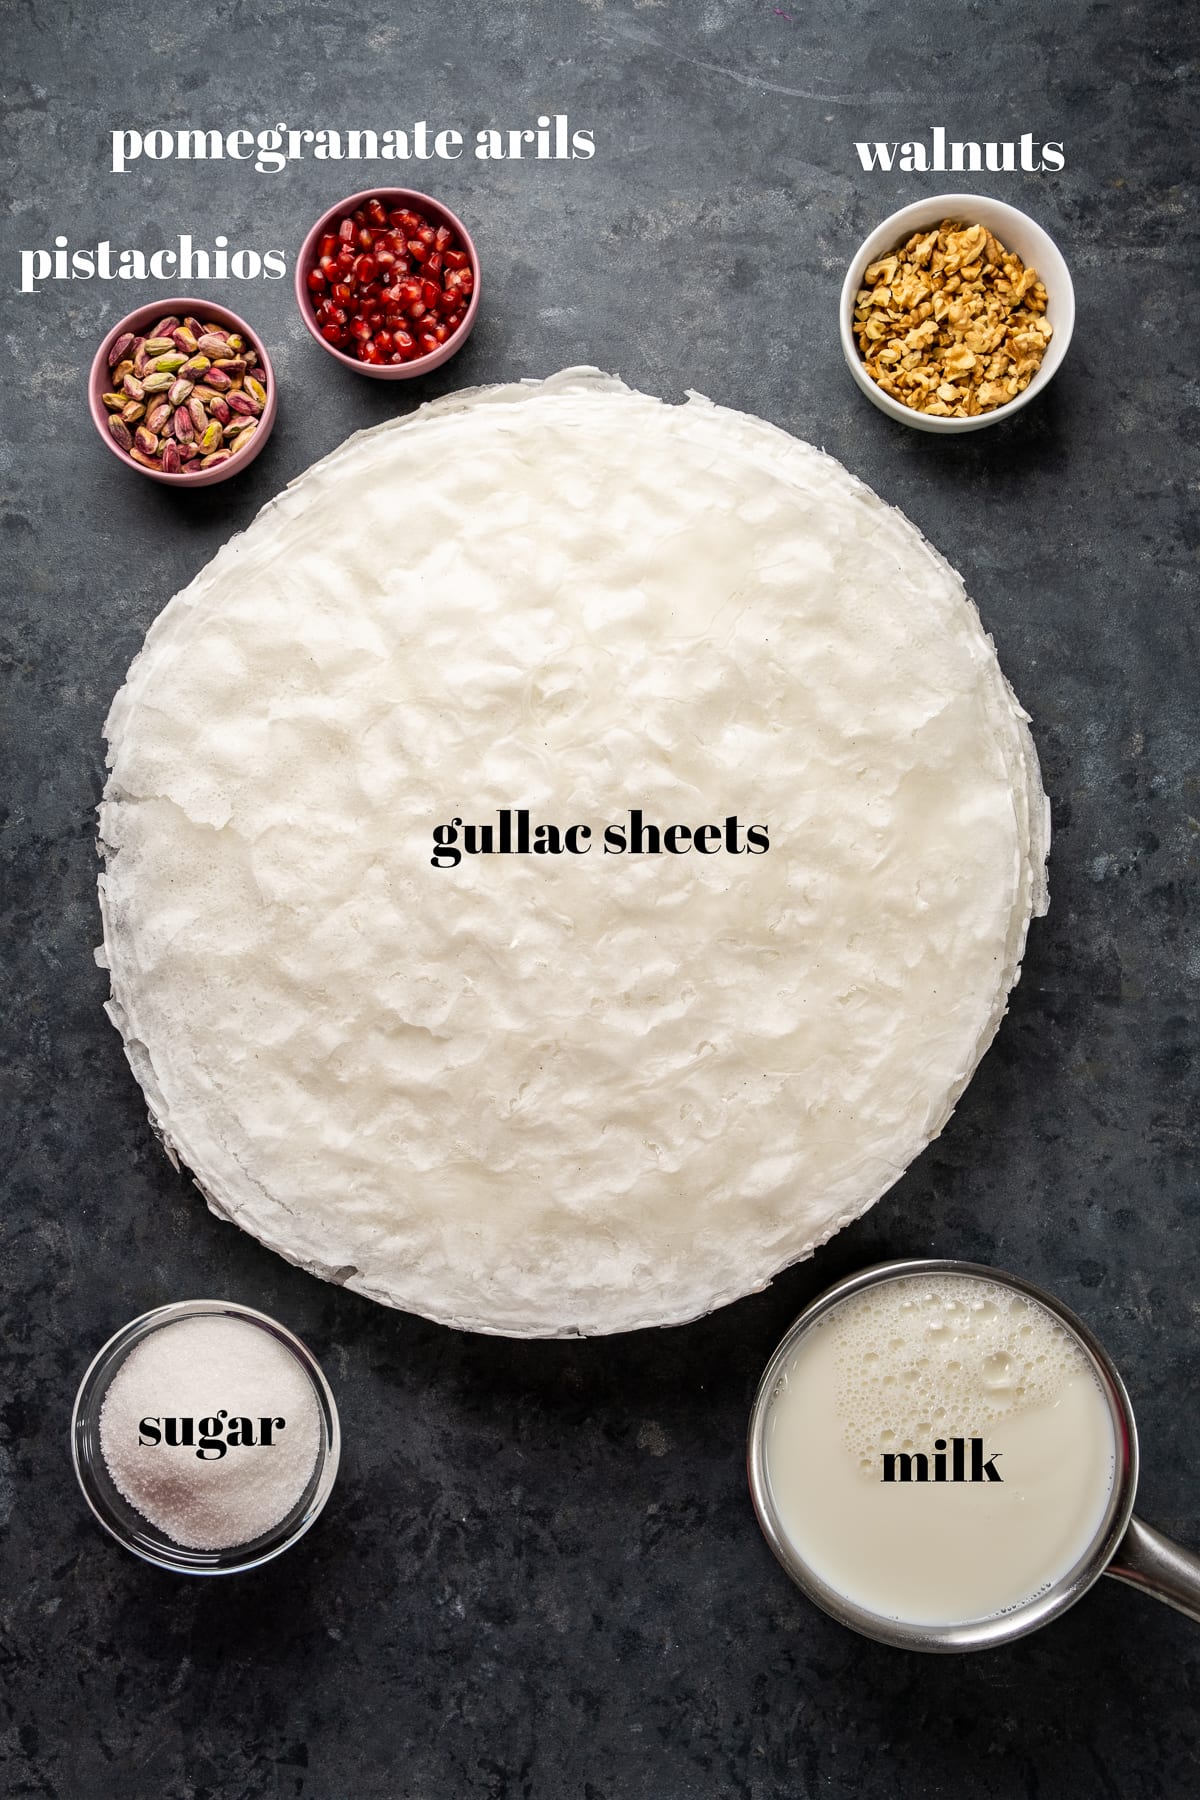 Gullac床单包围开心果、石榴假种皮、核桃、糖和牛奶在单独的碗在一个黑暗的背景。